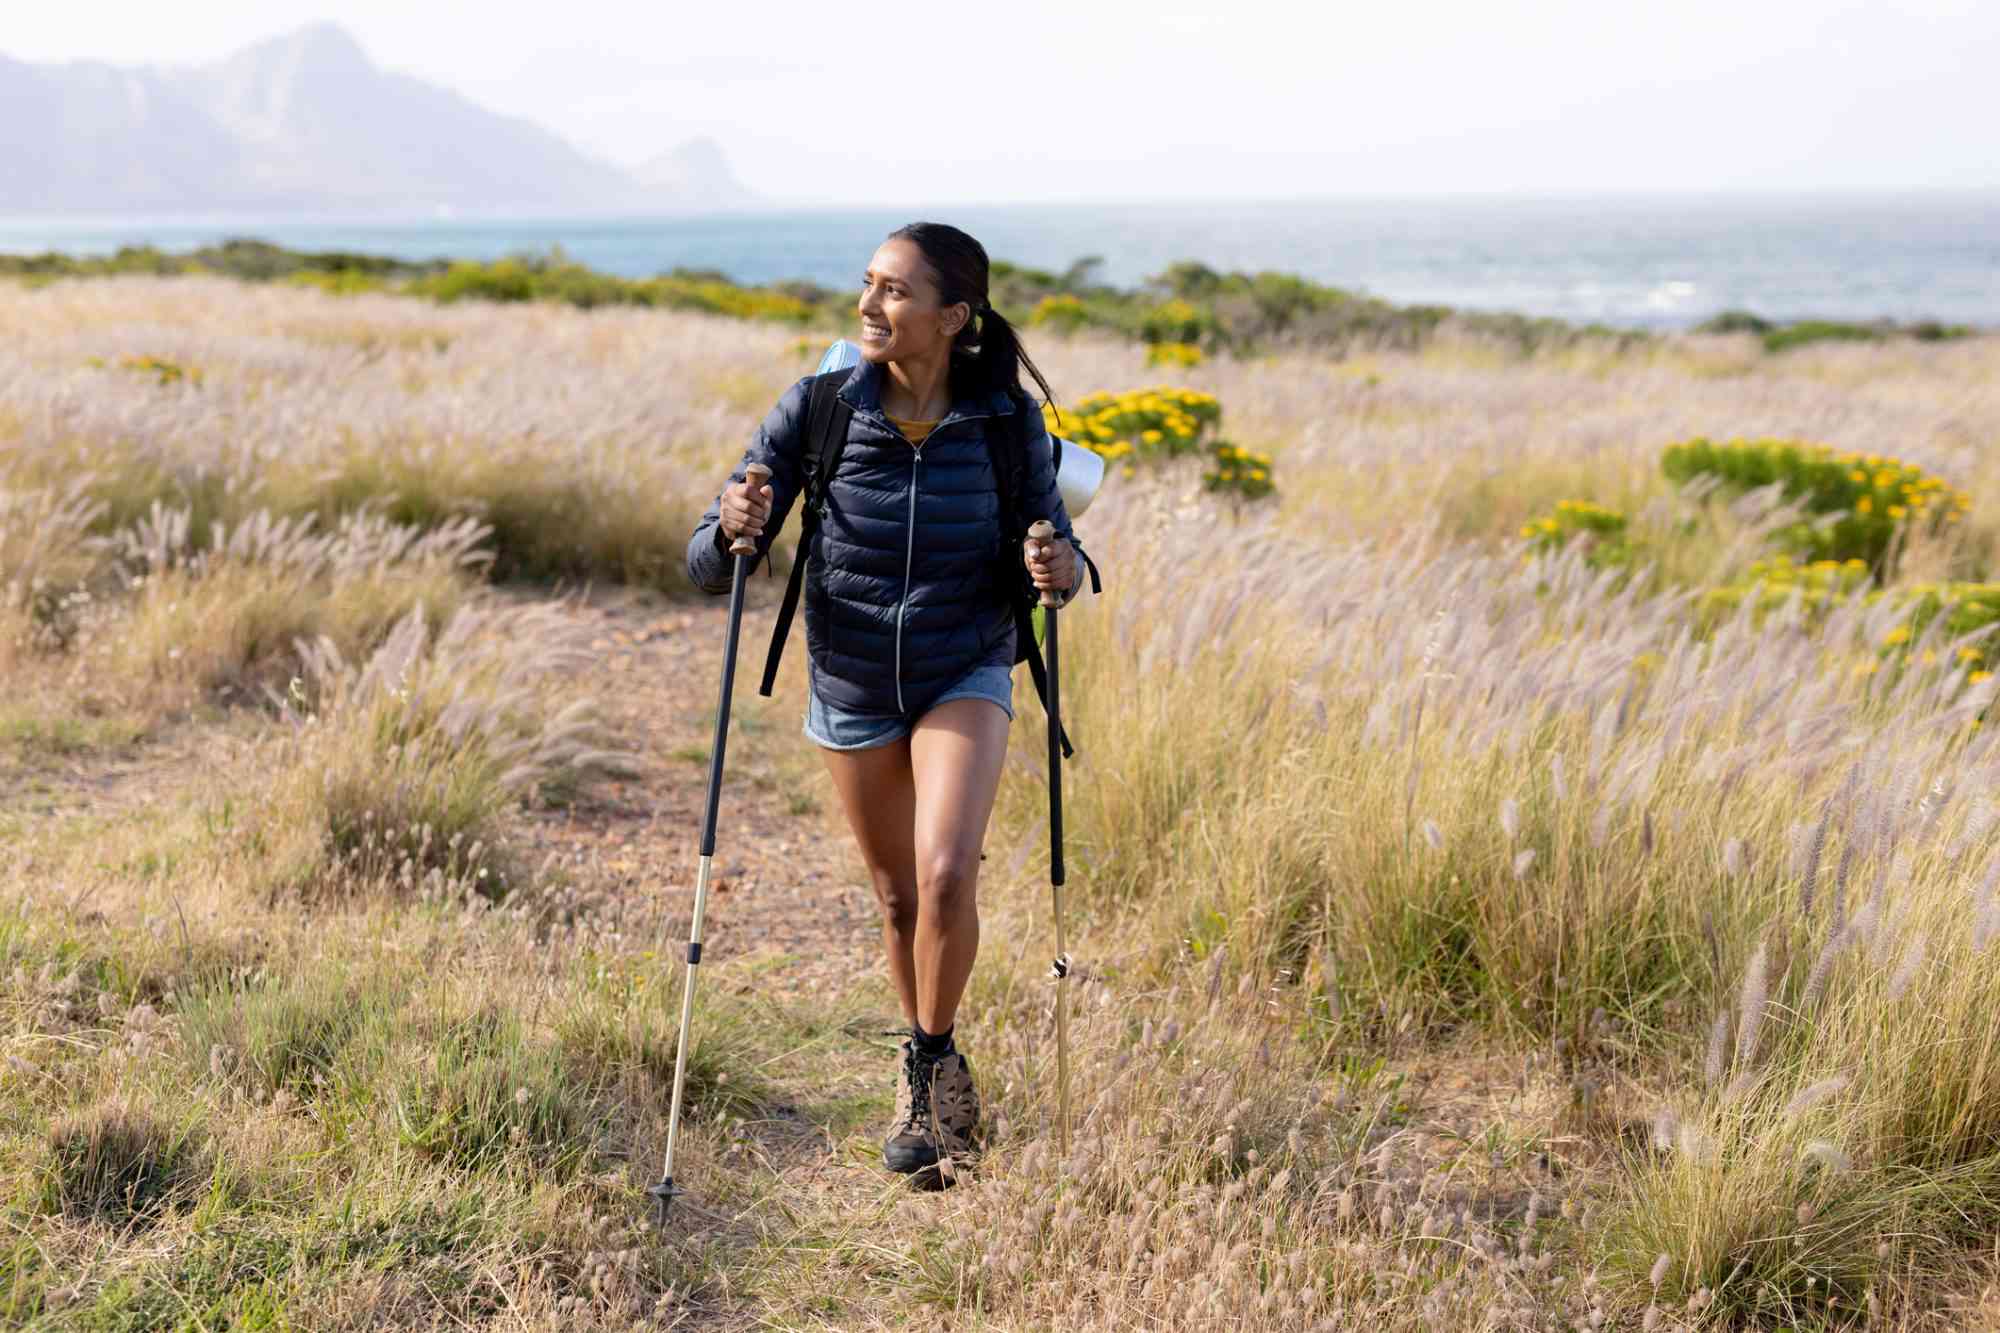 Nghiên cứu mới phát hiện kiểu đi bộ giúp làm chậm quá trình thoái hóa não bộ hiệu quả - Ảnh 2.